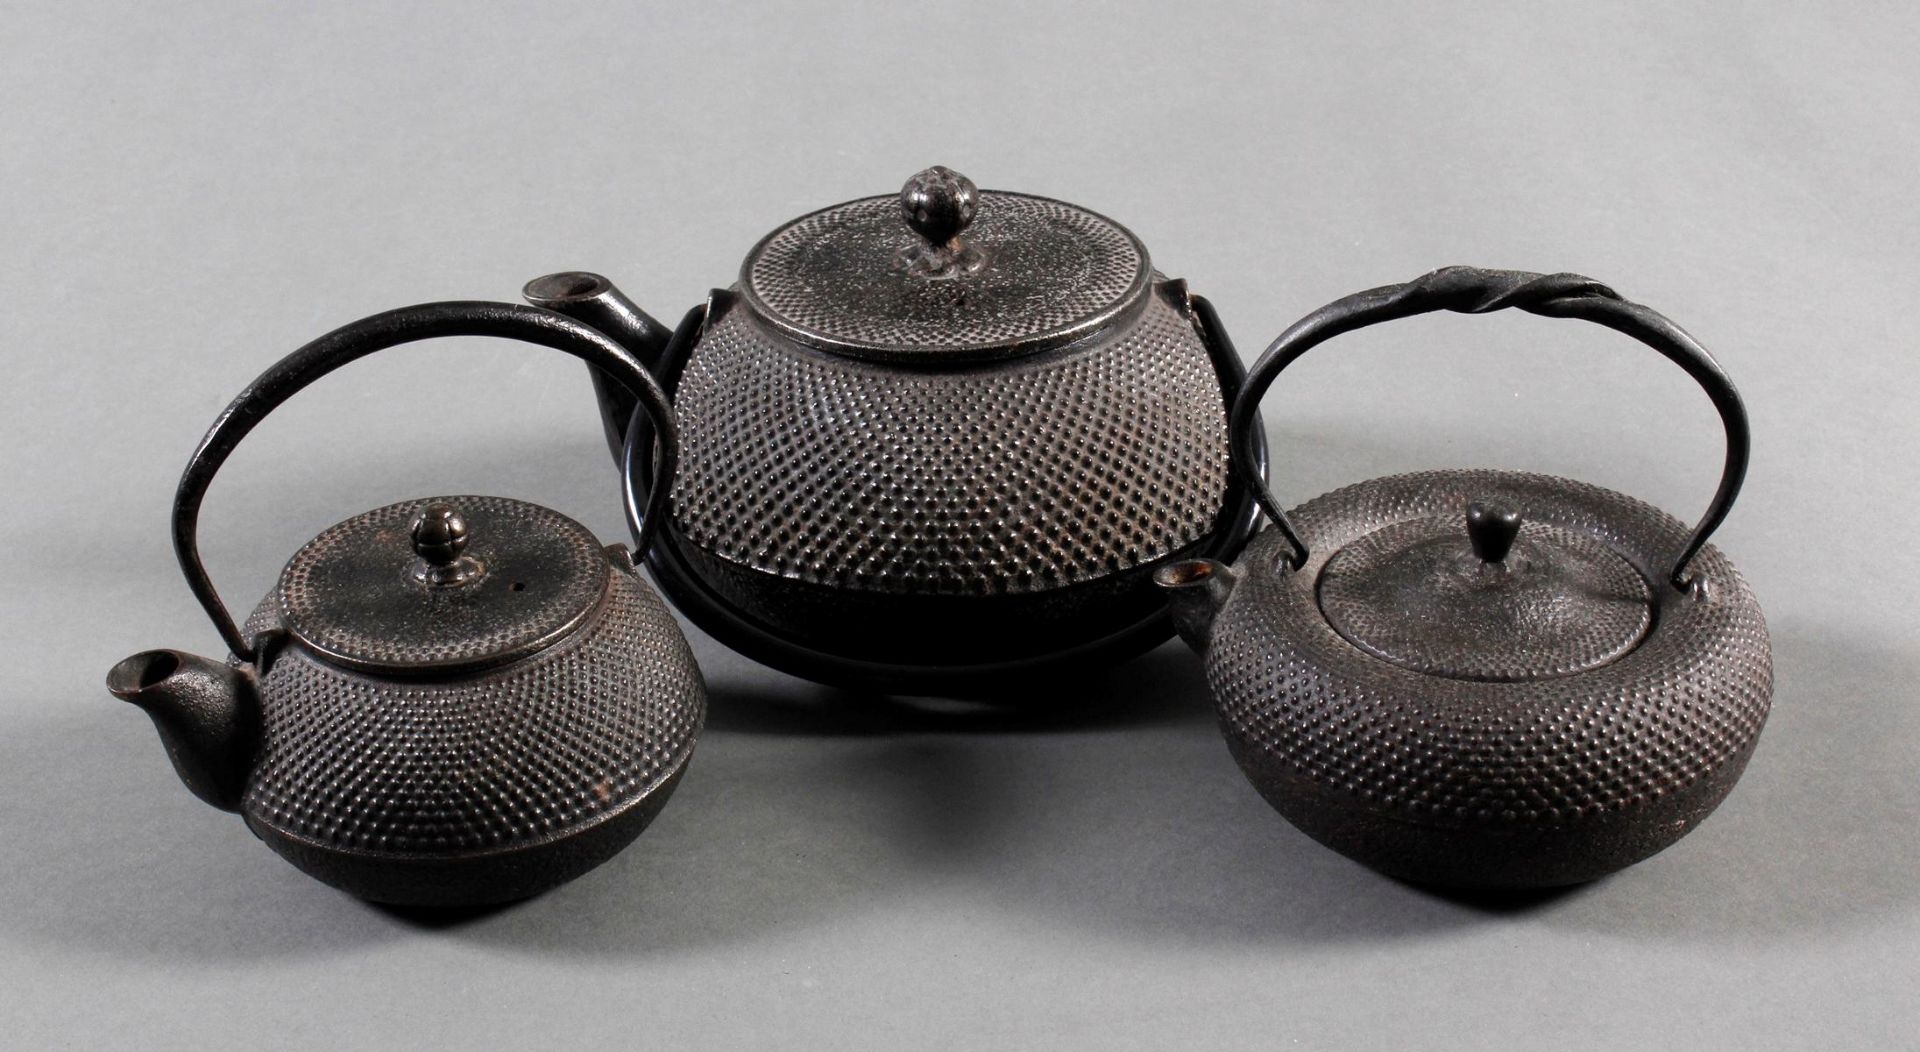 3 Teekannen (Tesubin) aus Eisen, Japan/China 19. Jh.